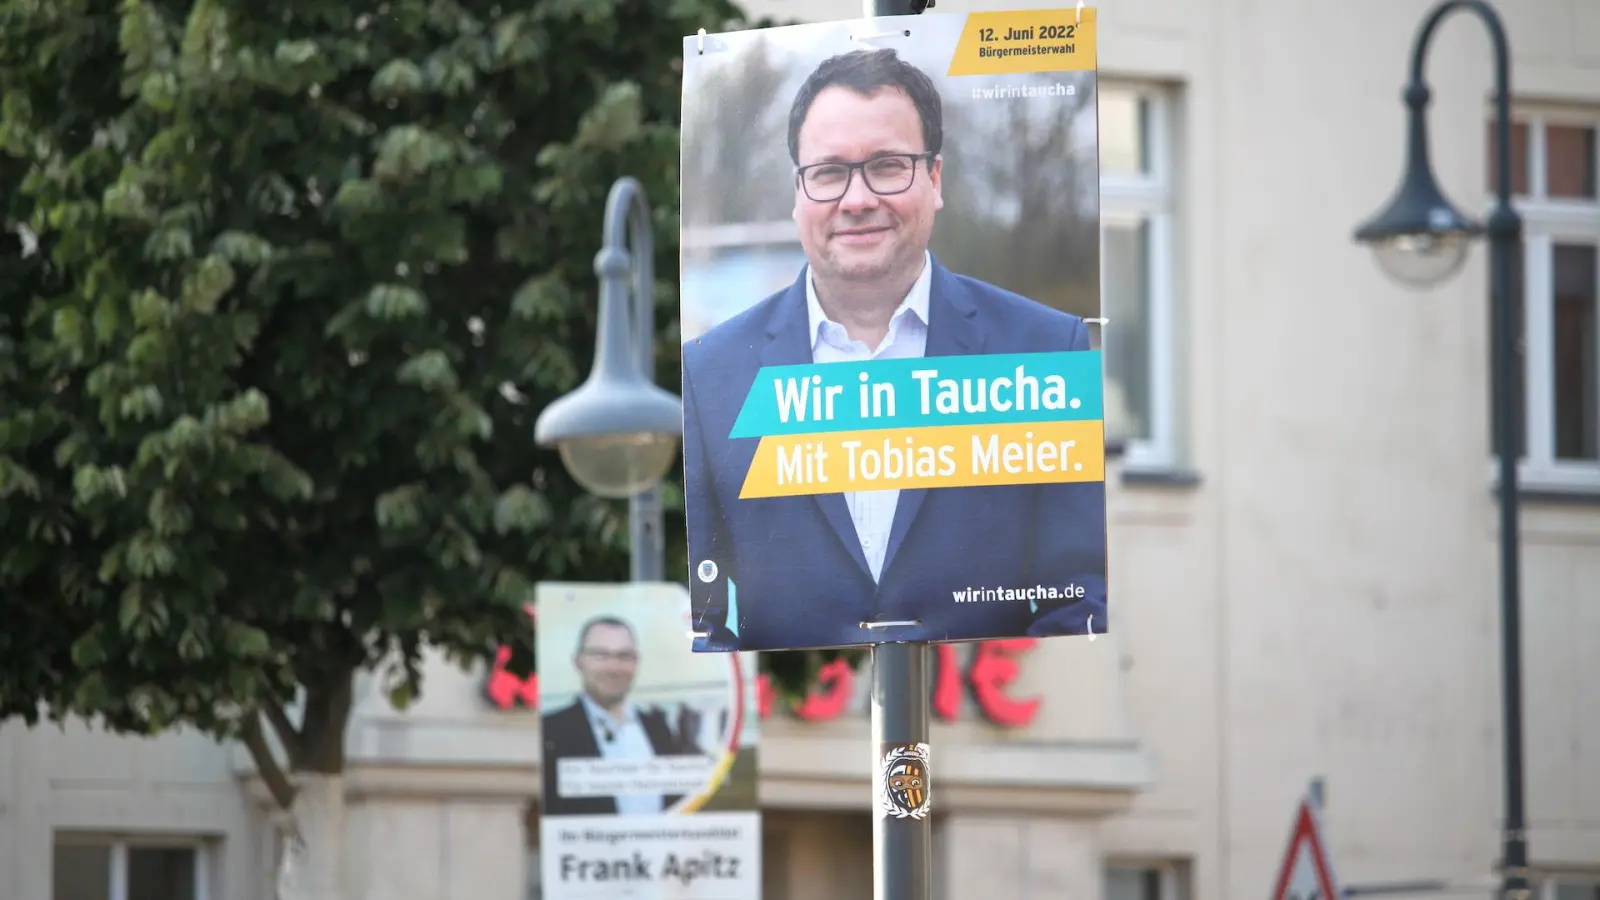 Bürgermeisterwahl 2022: Das lange Interview mit Tobias Meier und Frank Apitz (Foto: taucha-kompakt.de)